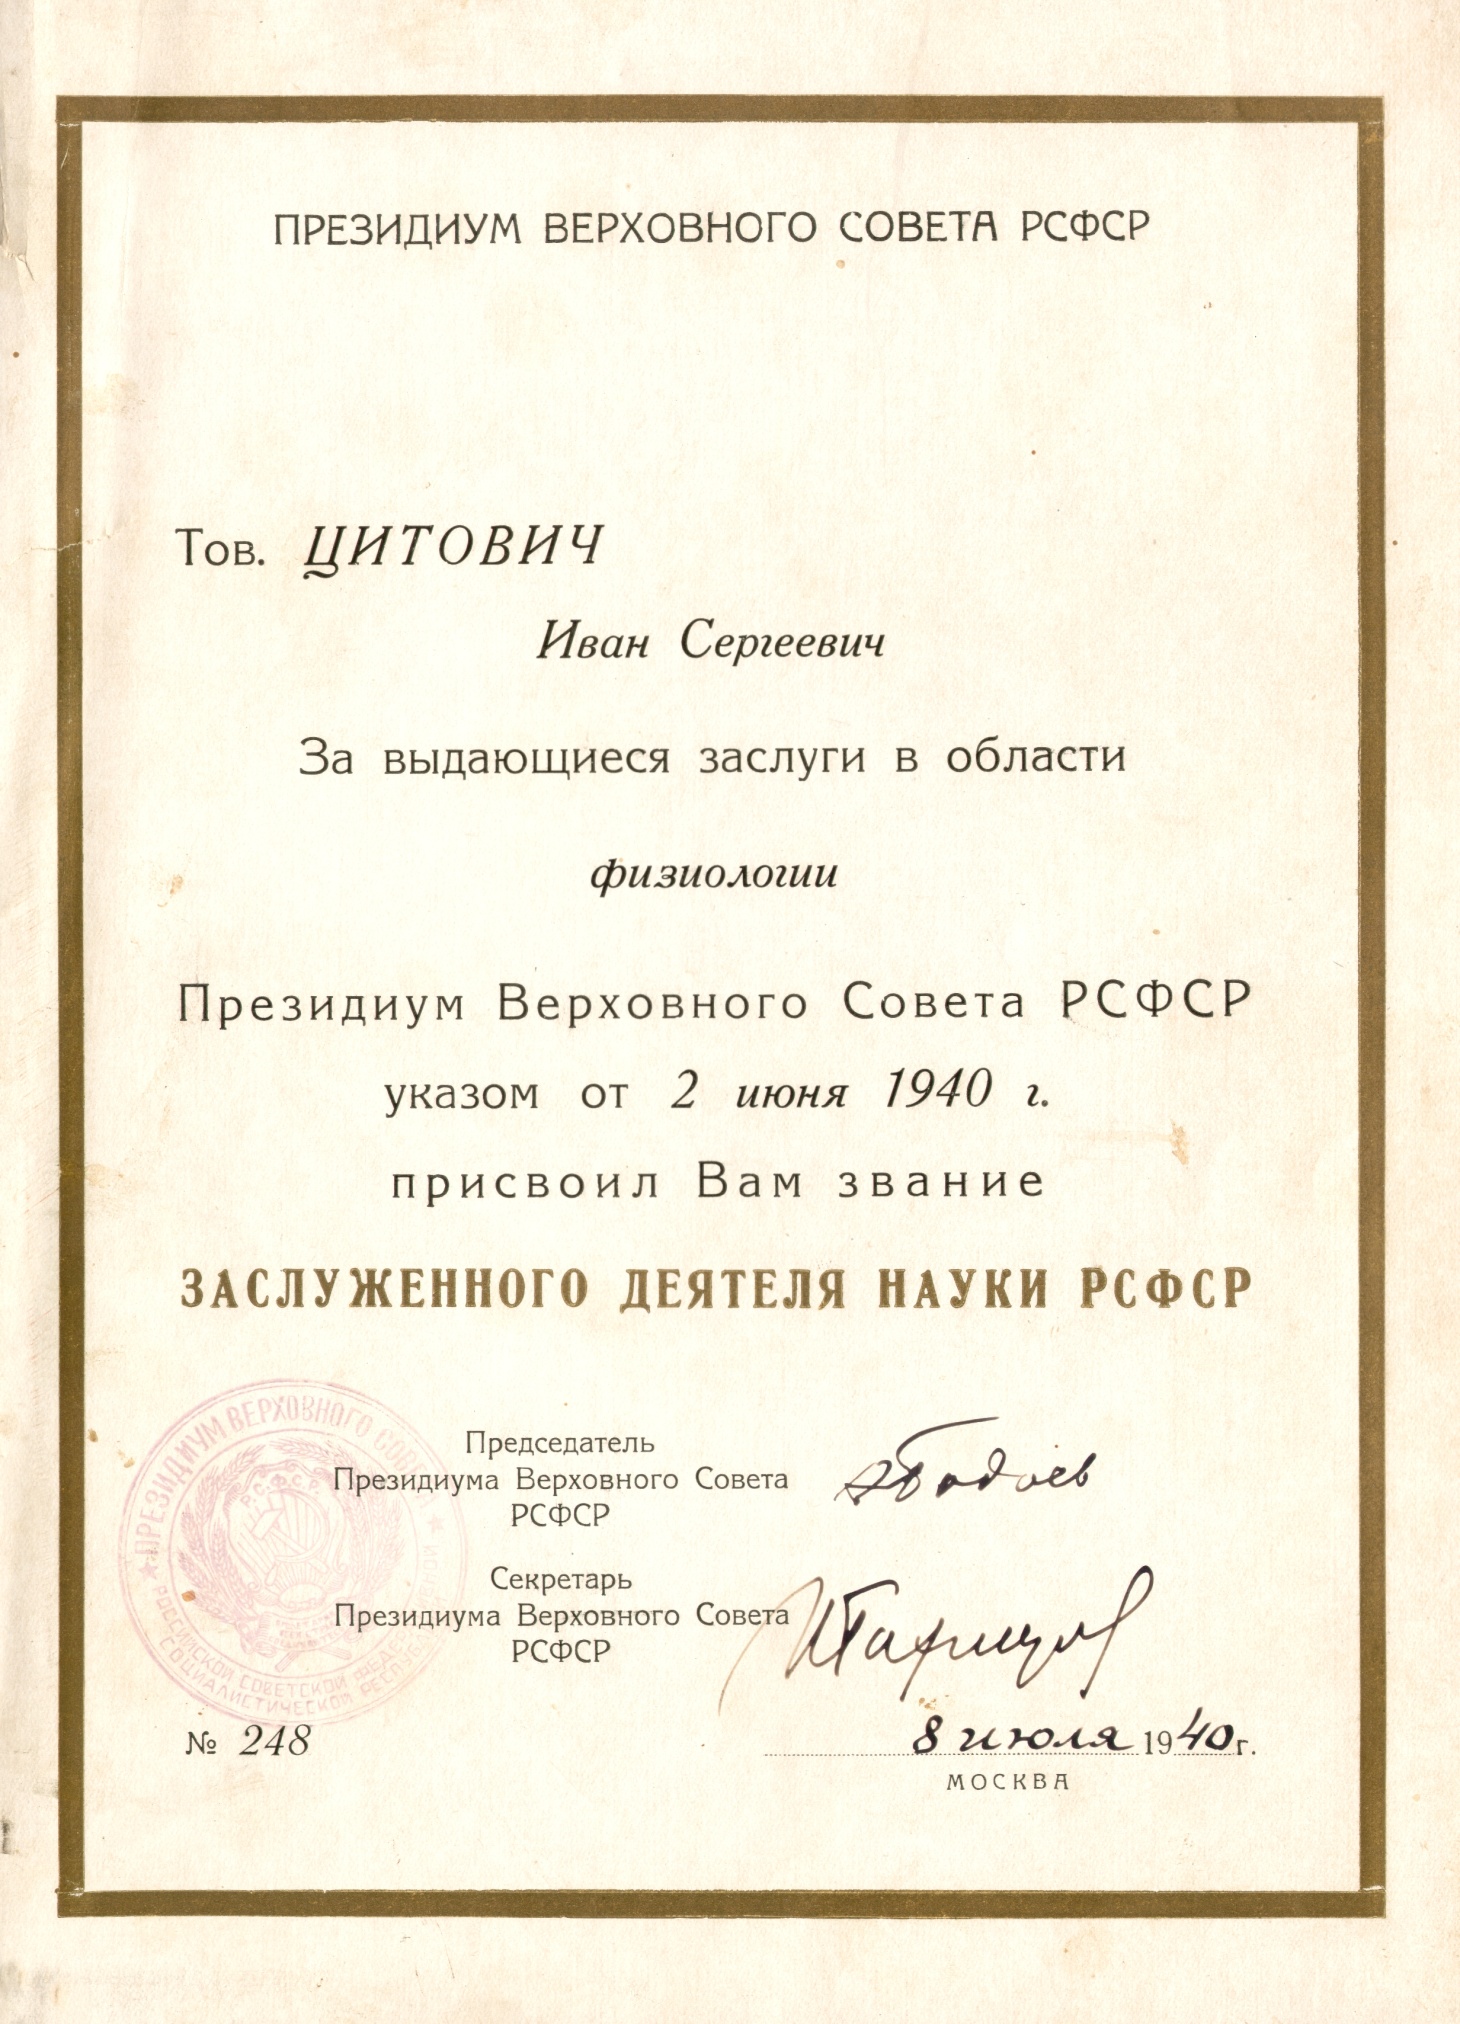 Почётная грамота заслуженного деятеля науки РСФСР № 248 от 08.08.1940 г.